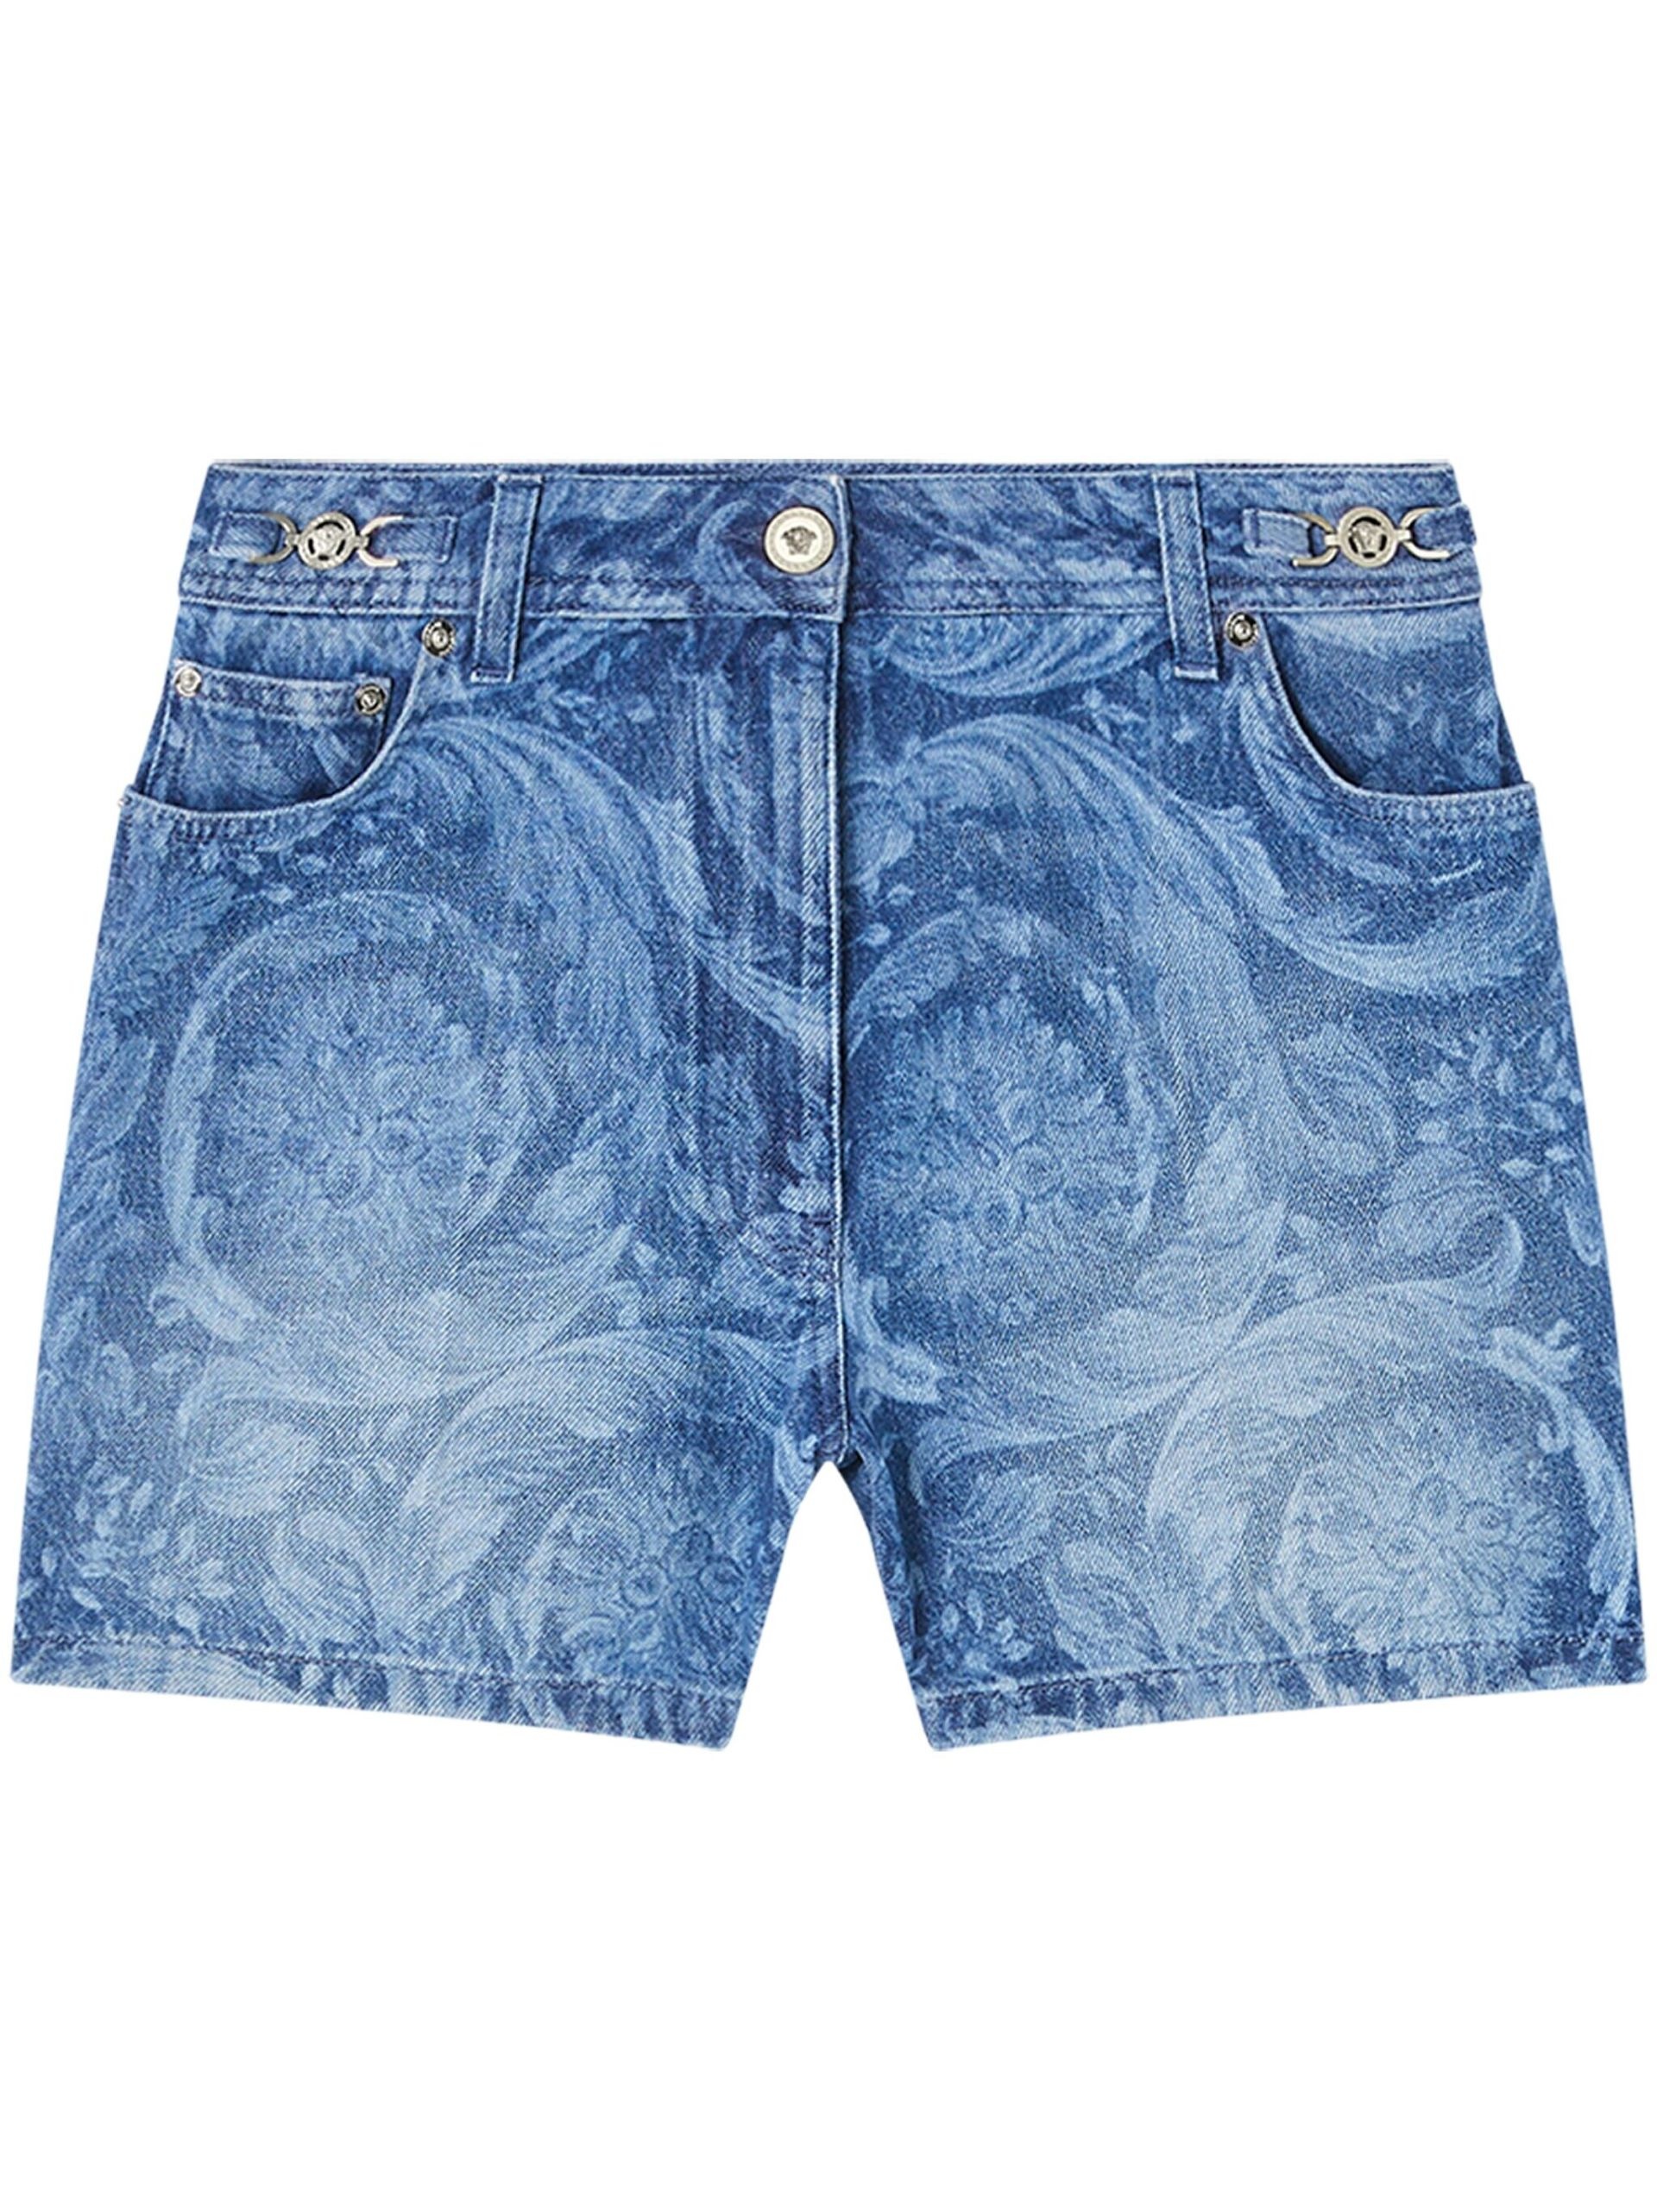 Blue Barocco Boyfriend Denim Shorts - 1